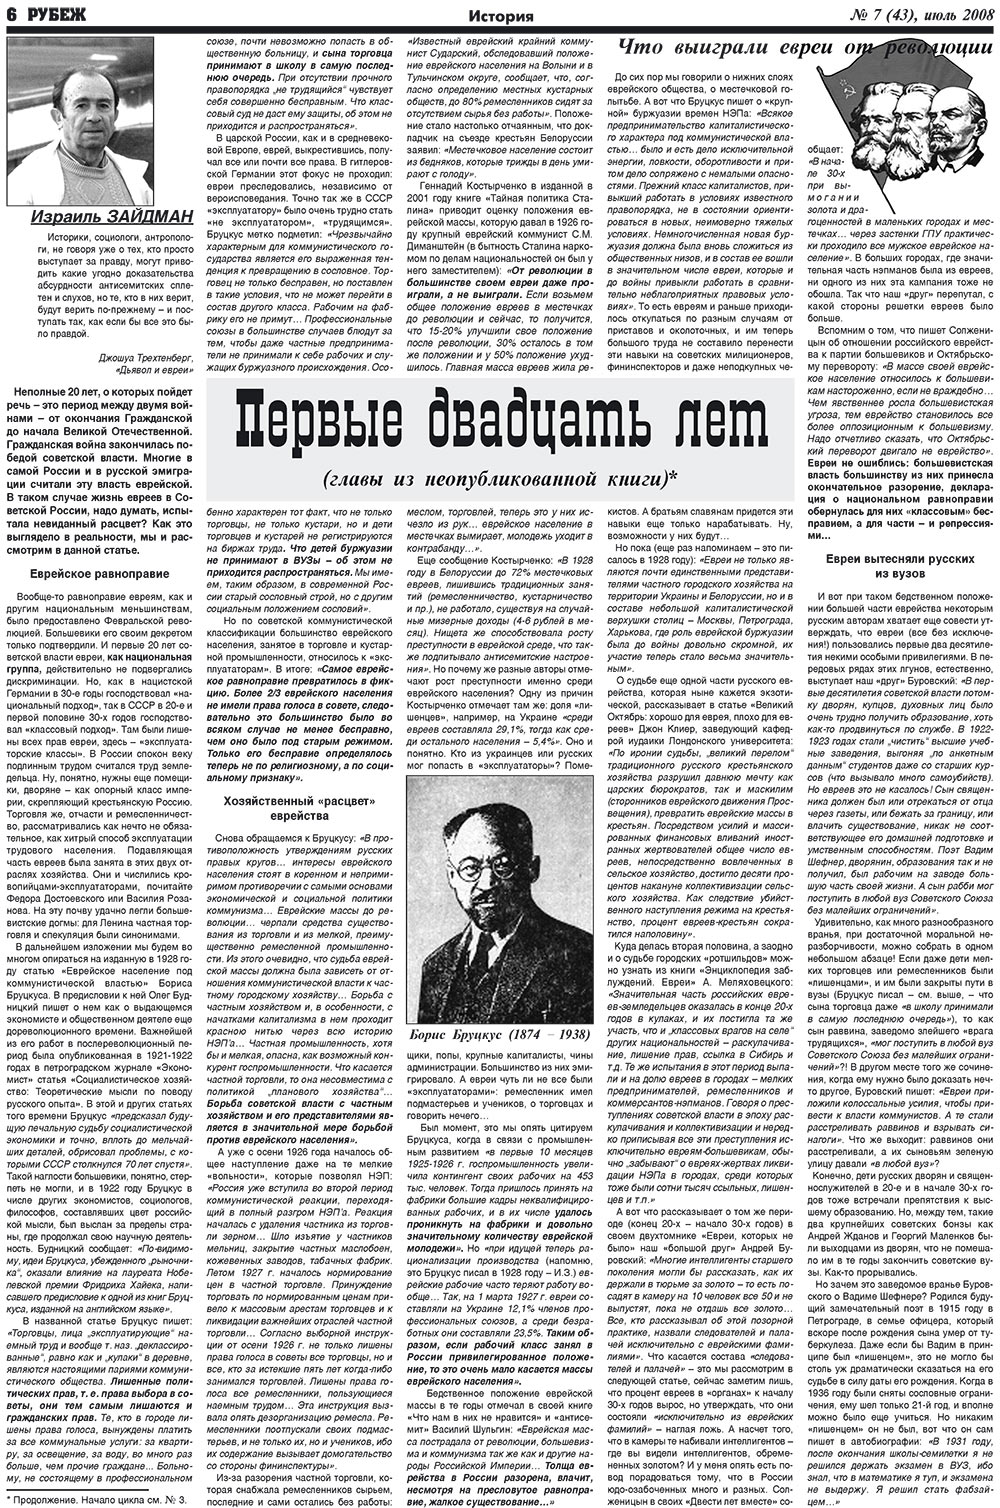 Рубеж (газета). 2008 год, номер 7, стр. 6